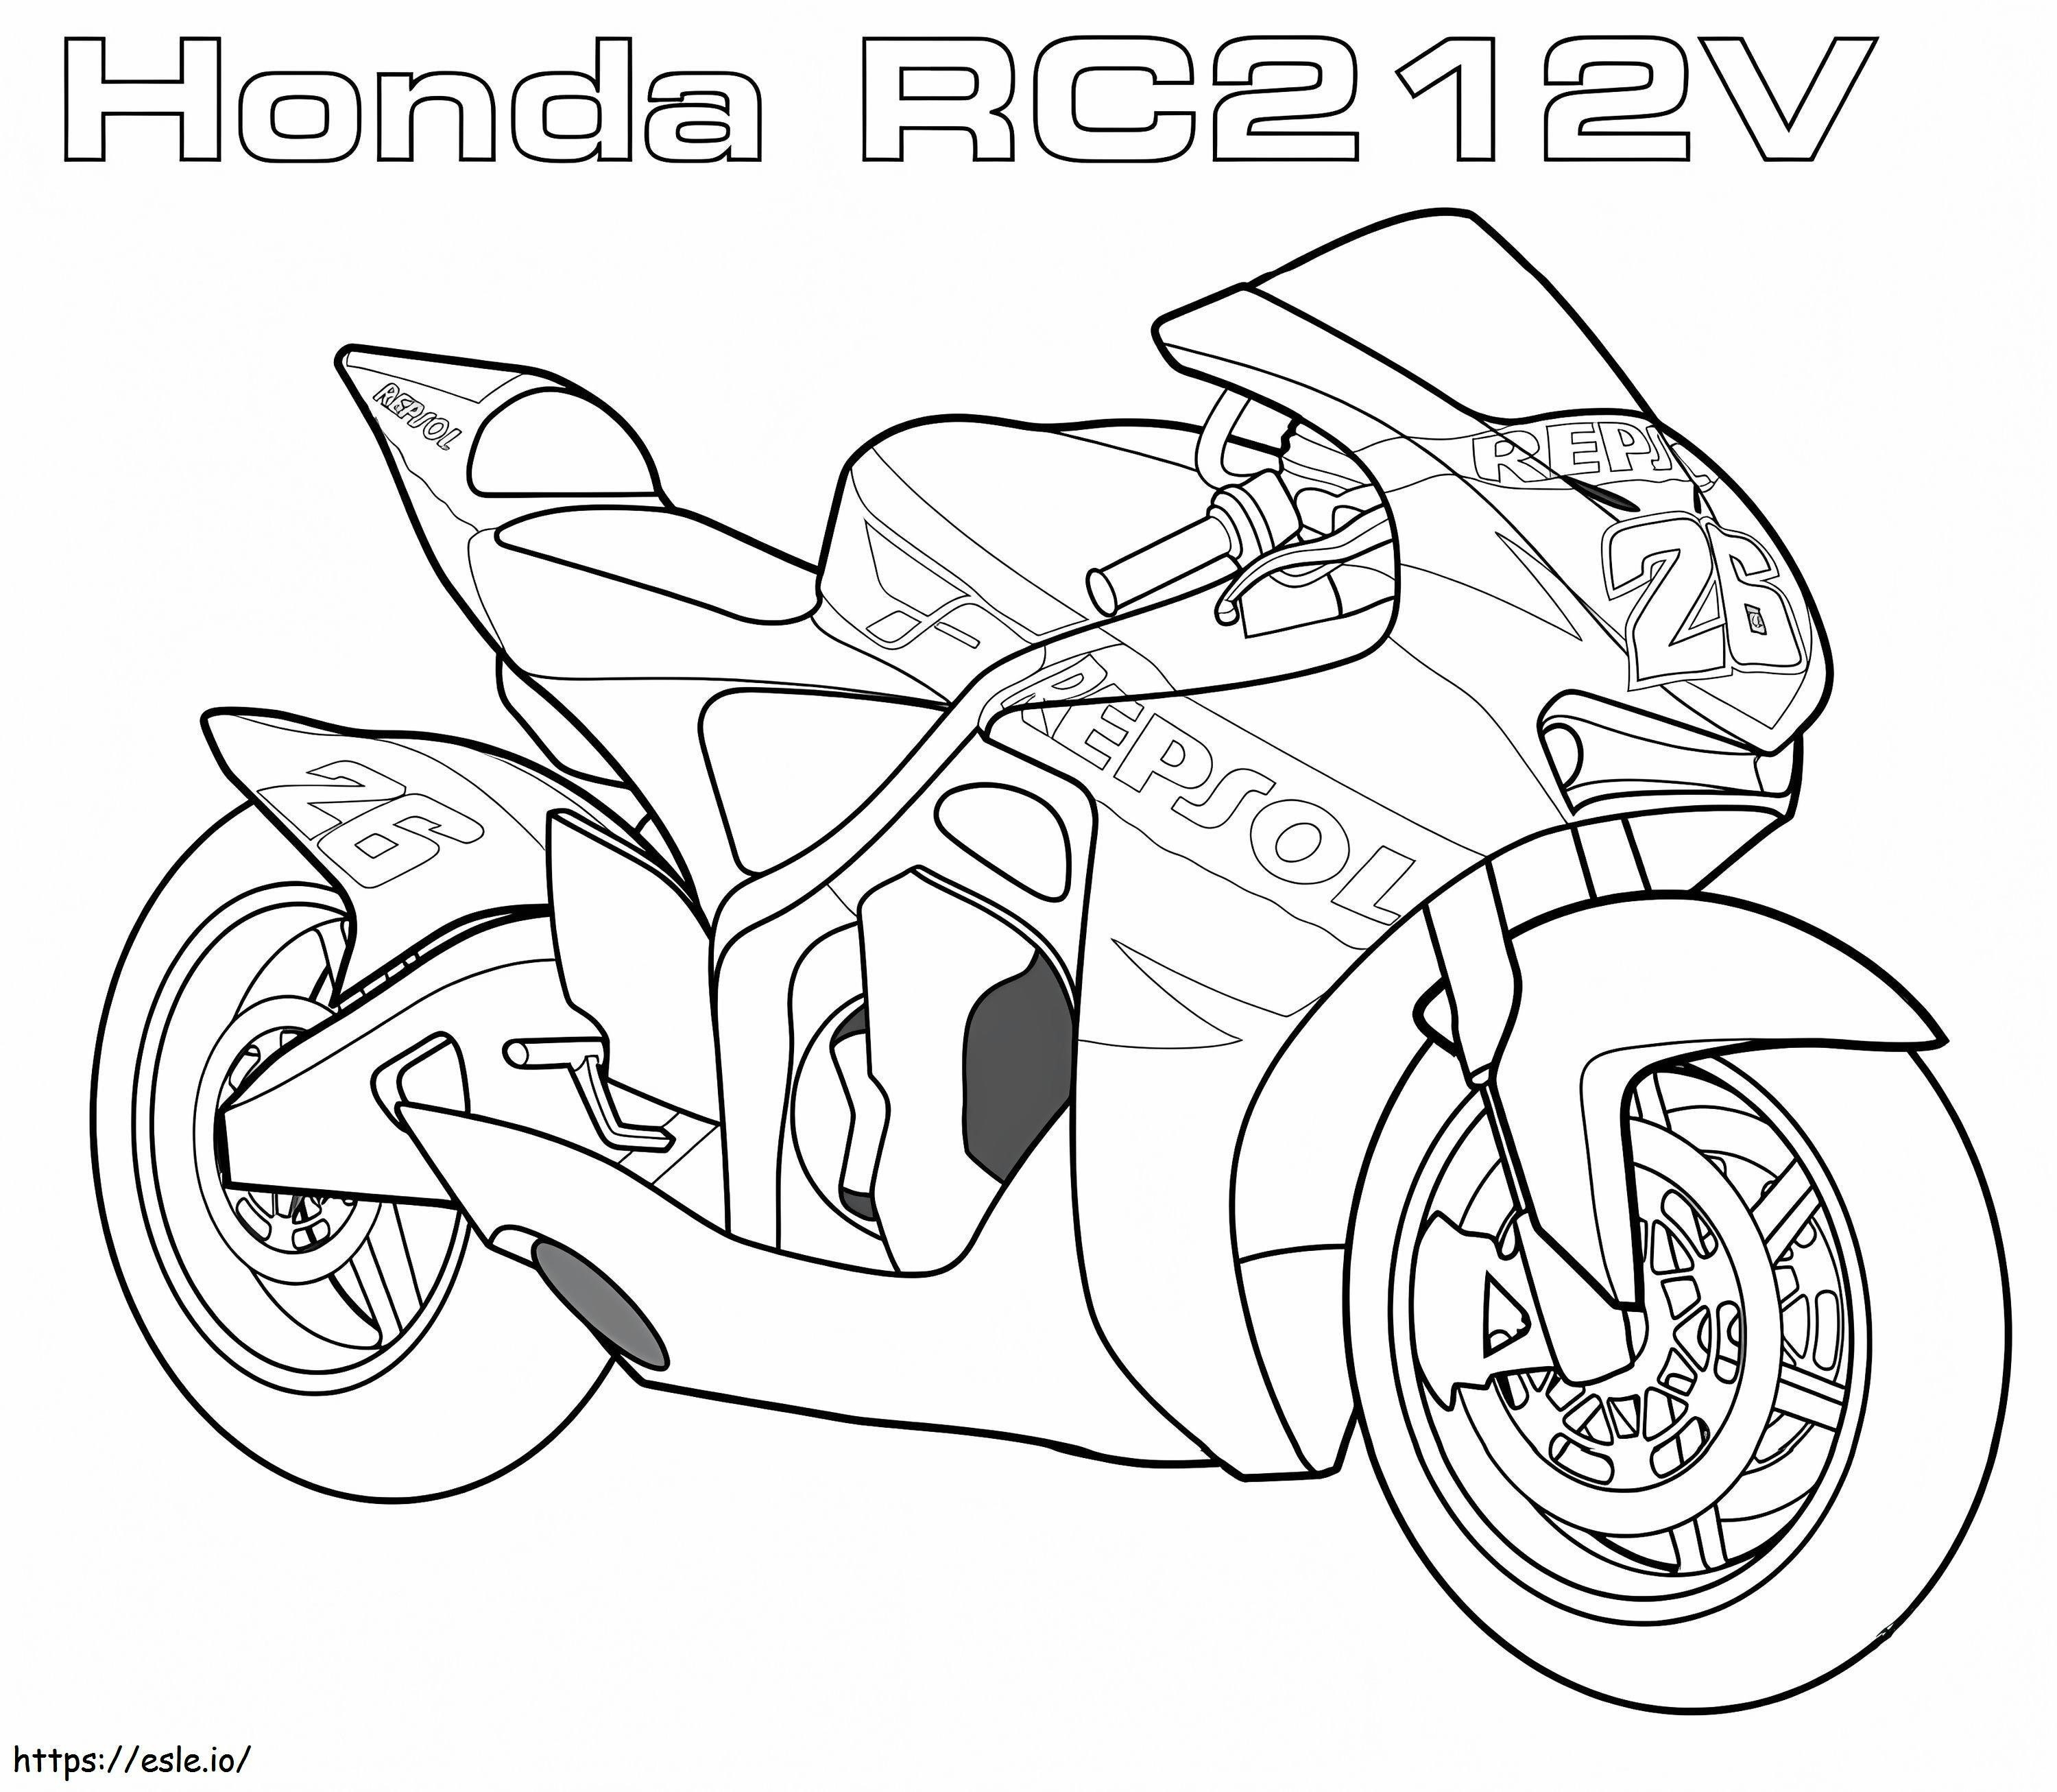 Honda RC2 12V coloring page